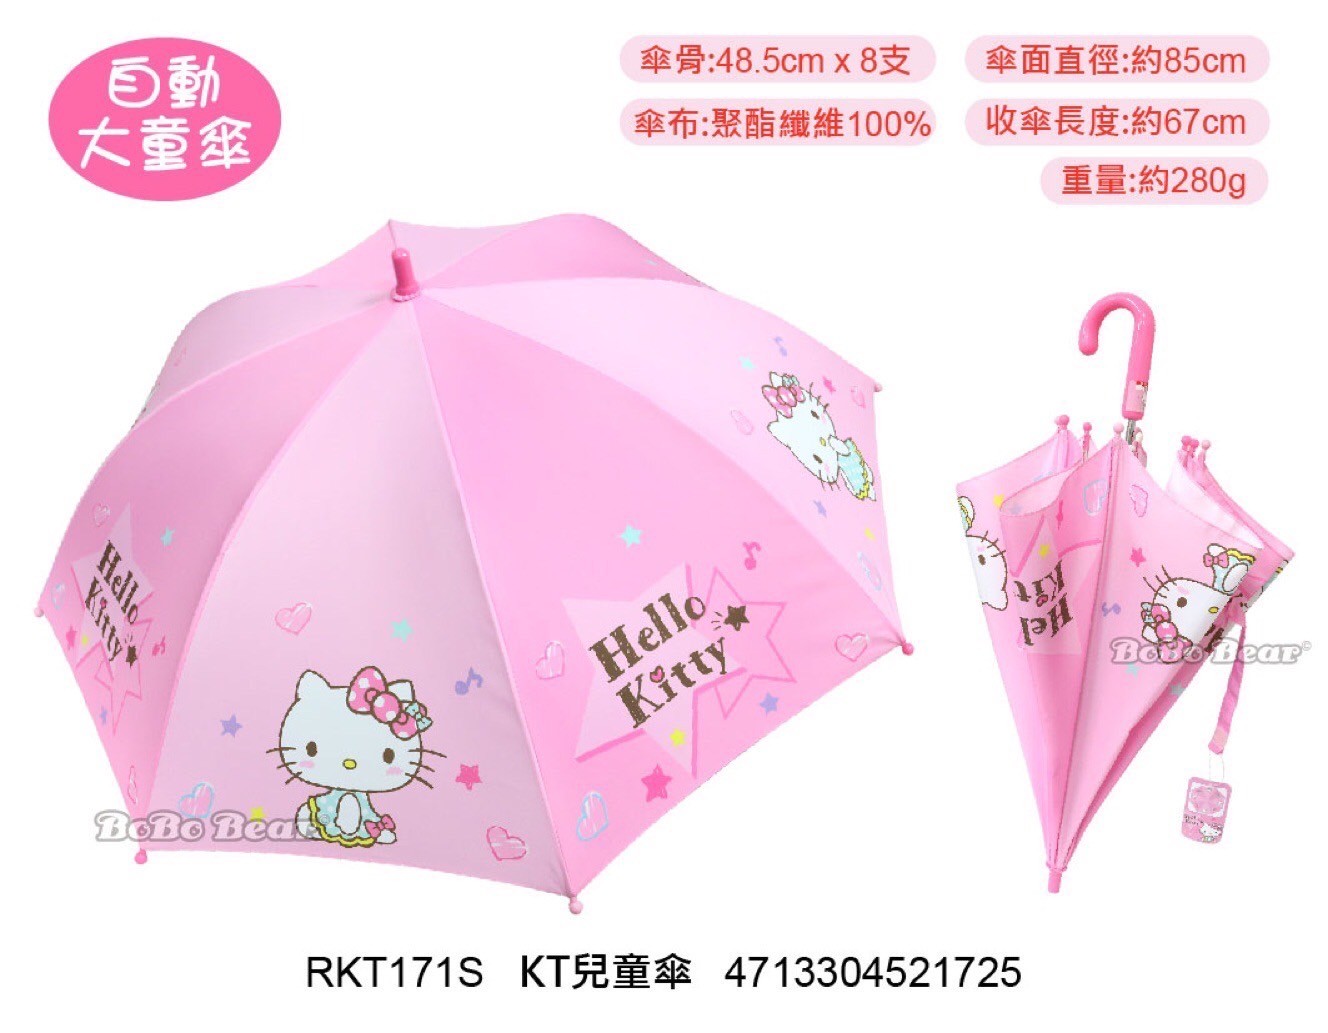 三麗鷗家族 正版授權 童傘